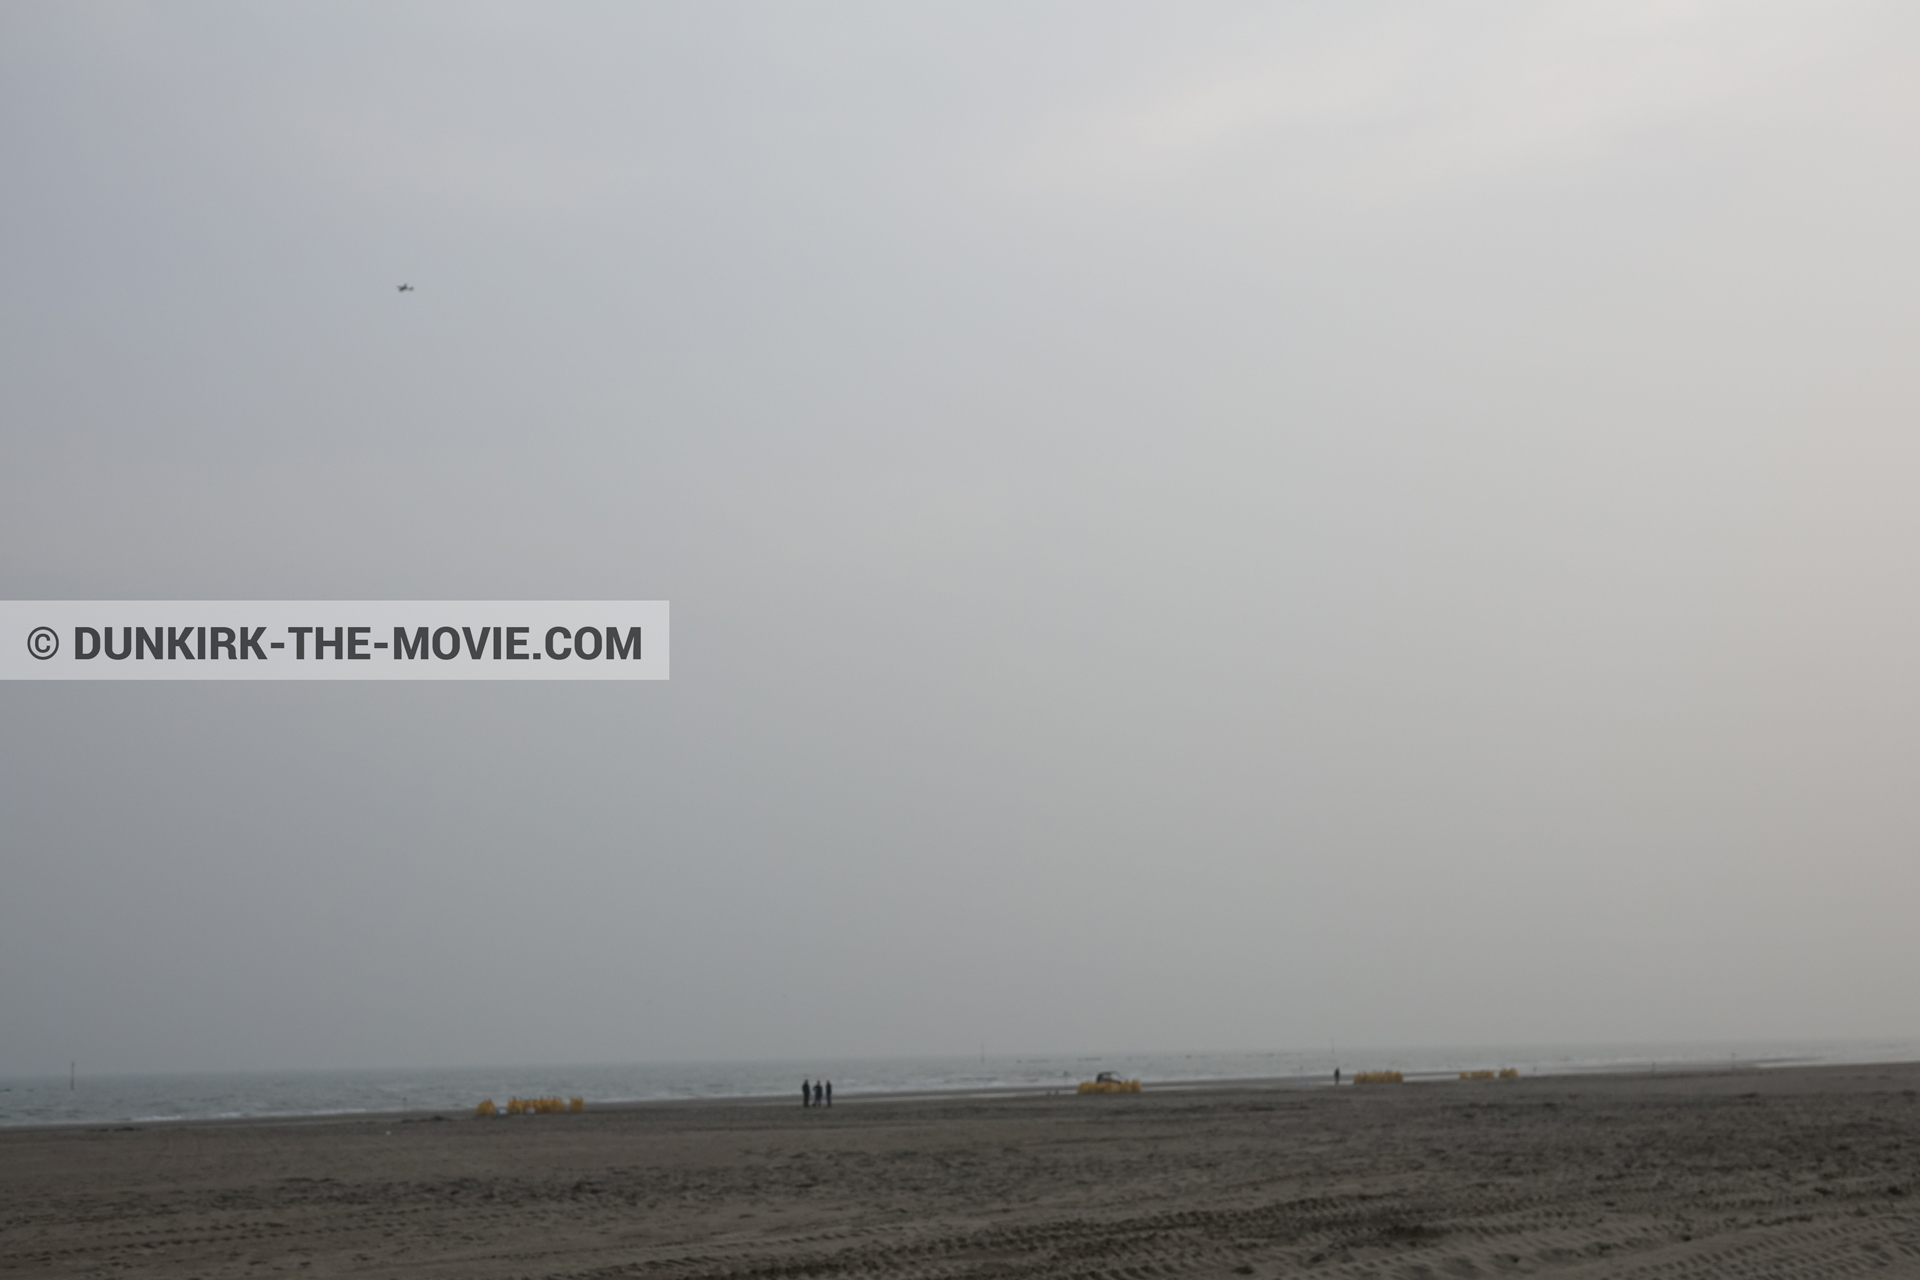 Fotos con avion, cielo gris, playa,  durante el rodaje de la película Dunkerque de Nolan